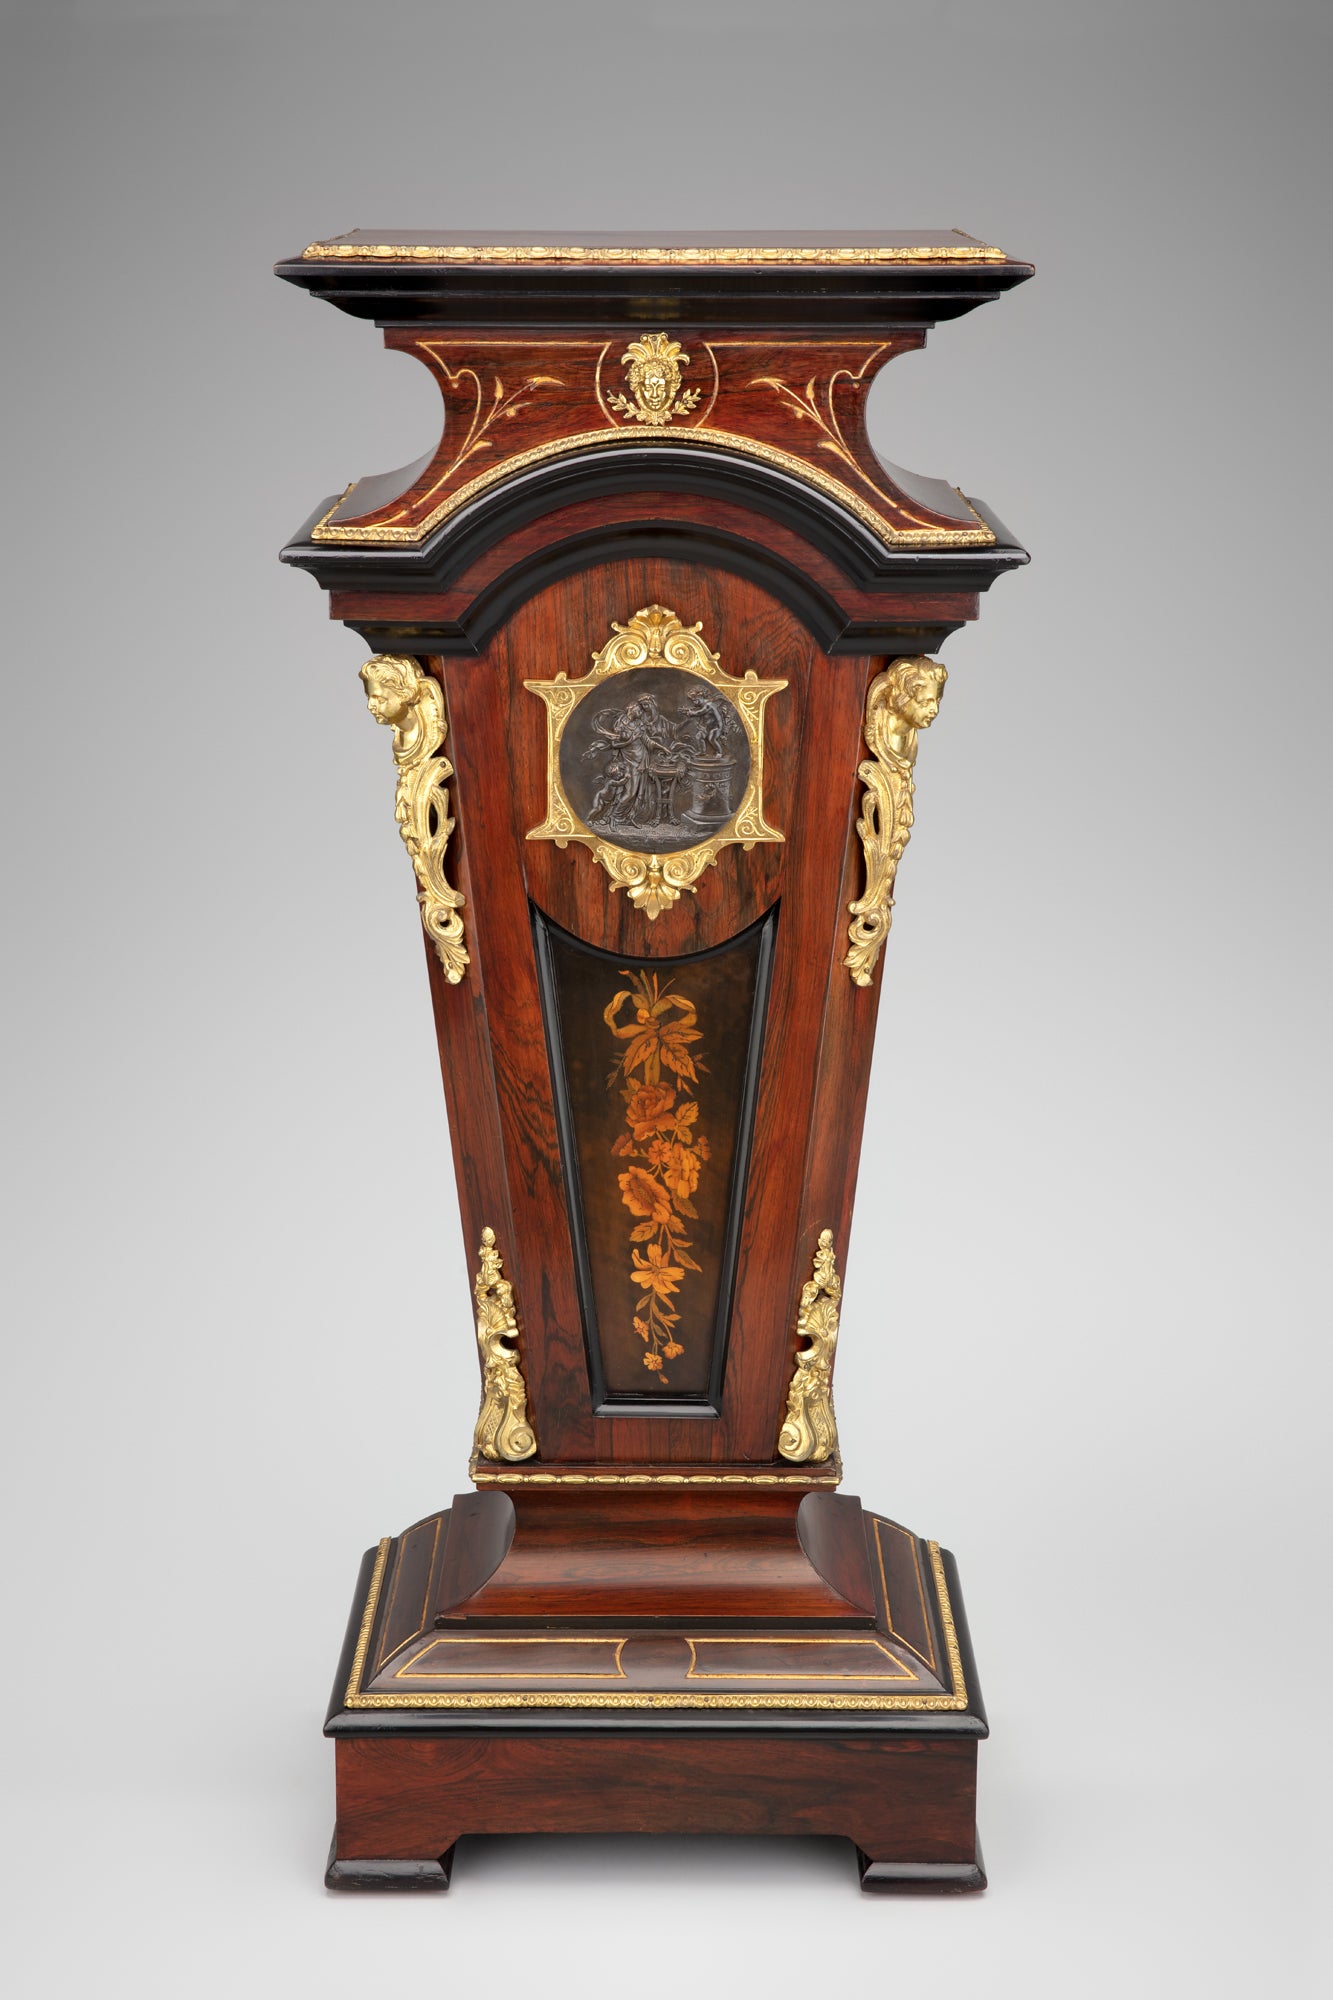  Renaissance Revival pedestal  c. 1860–70